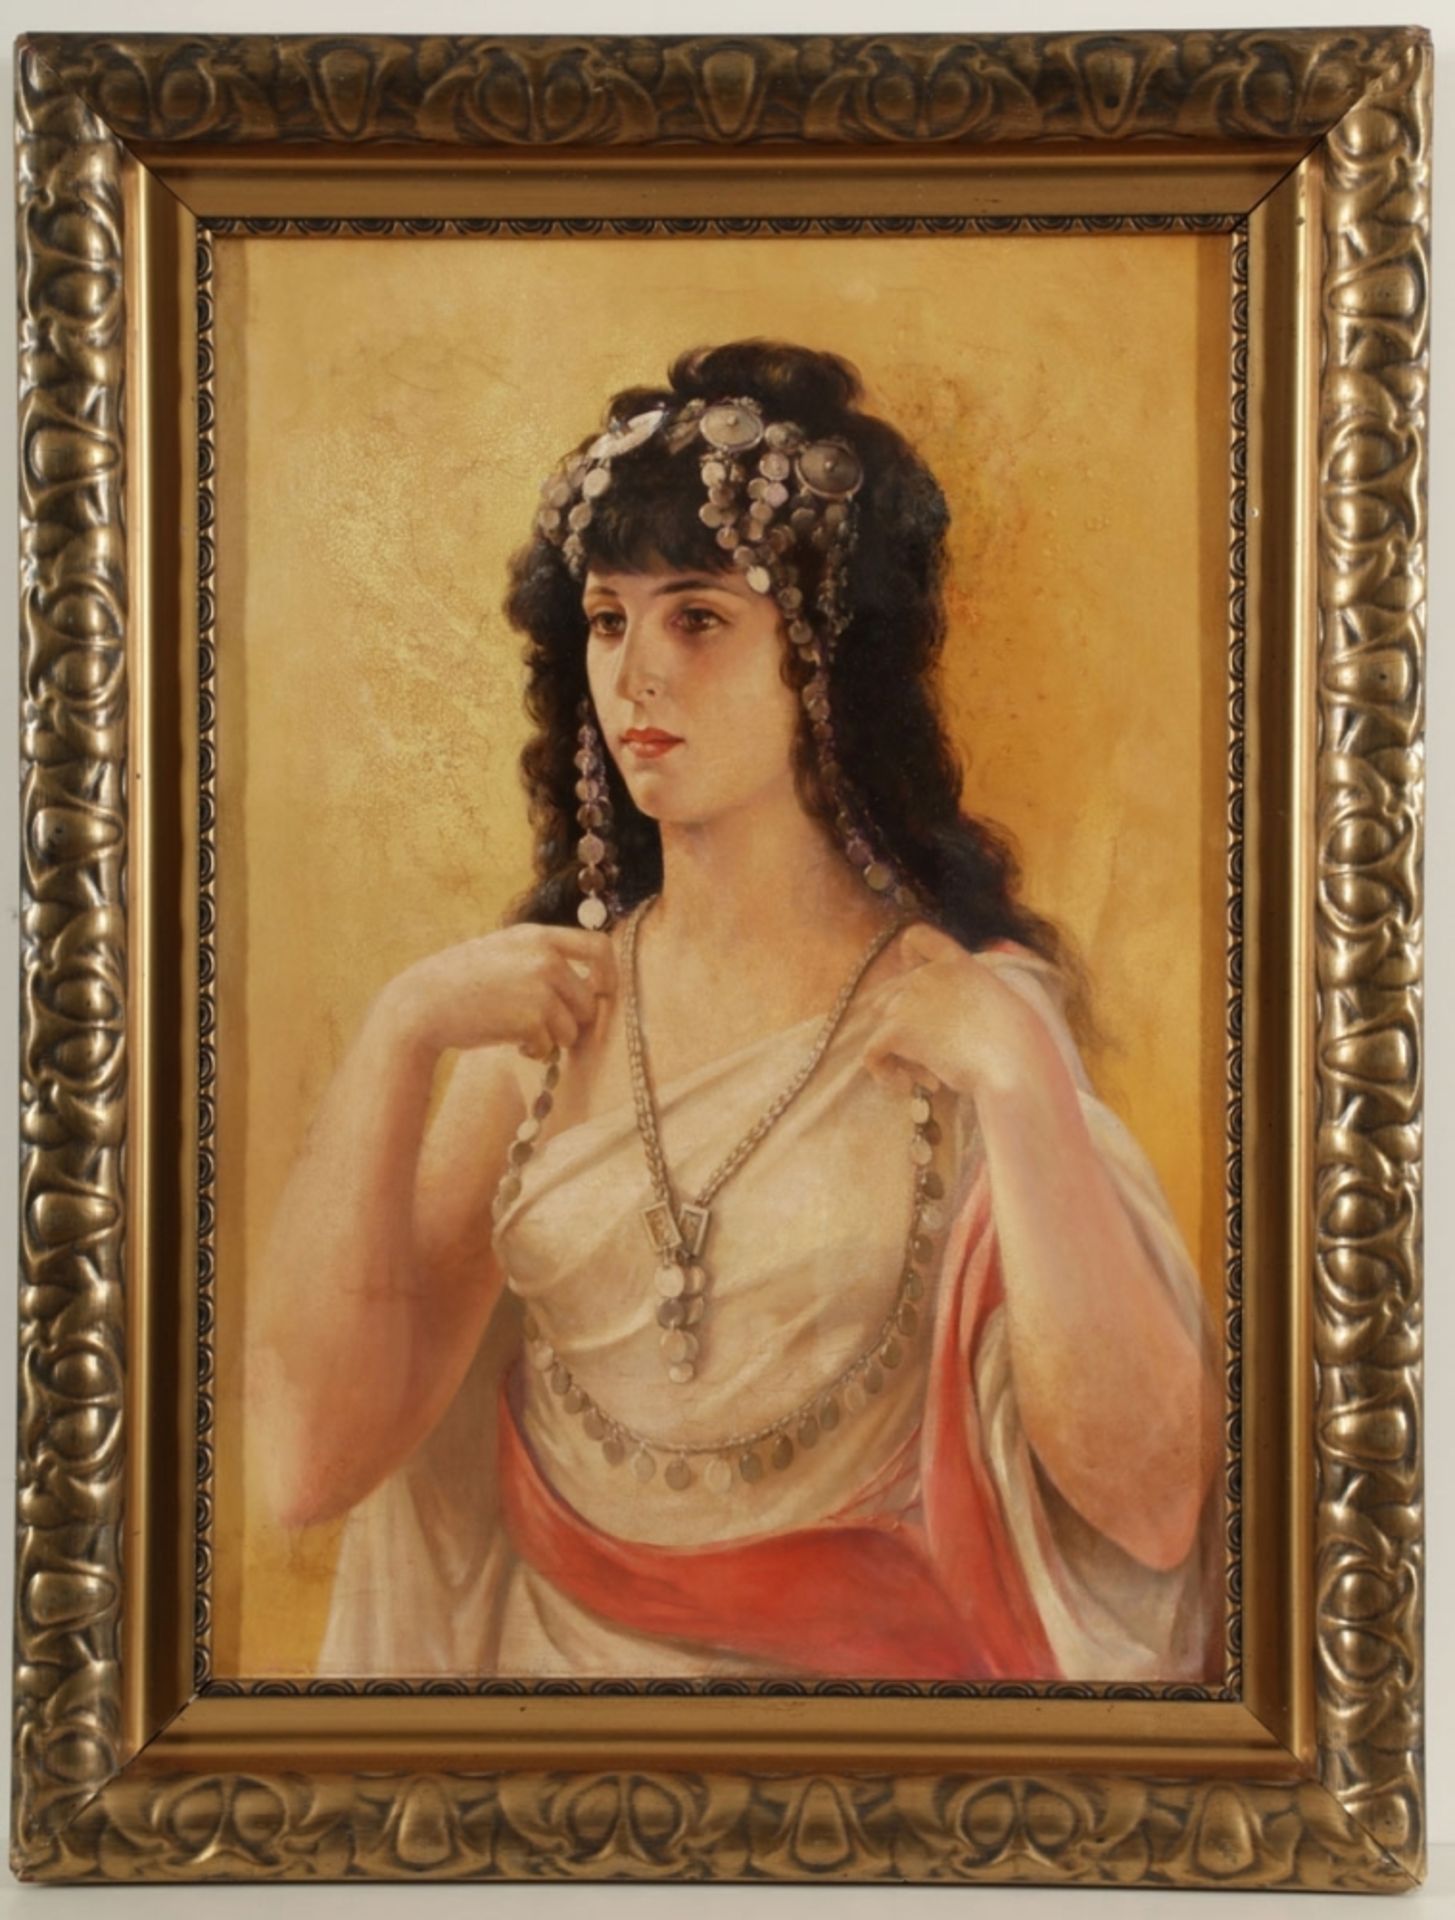 Künstler des 19. Jahrhunderts- Junge Frau in orientalischer Tracht - Öl/Lwd. 85,5 x 60 cm. - Image 2 of 2